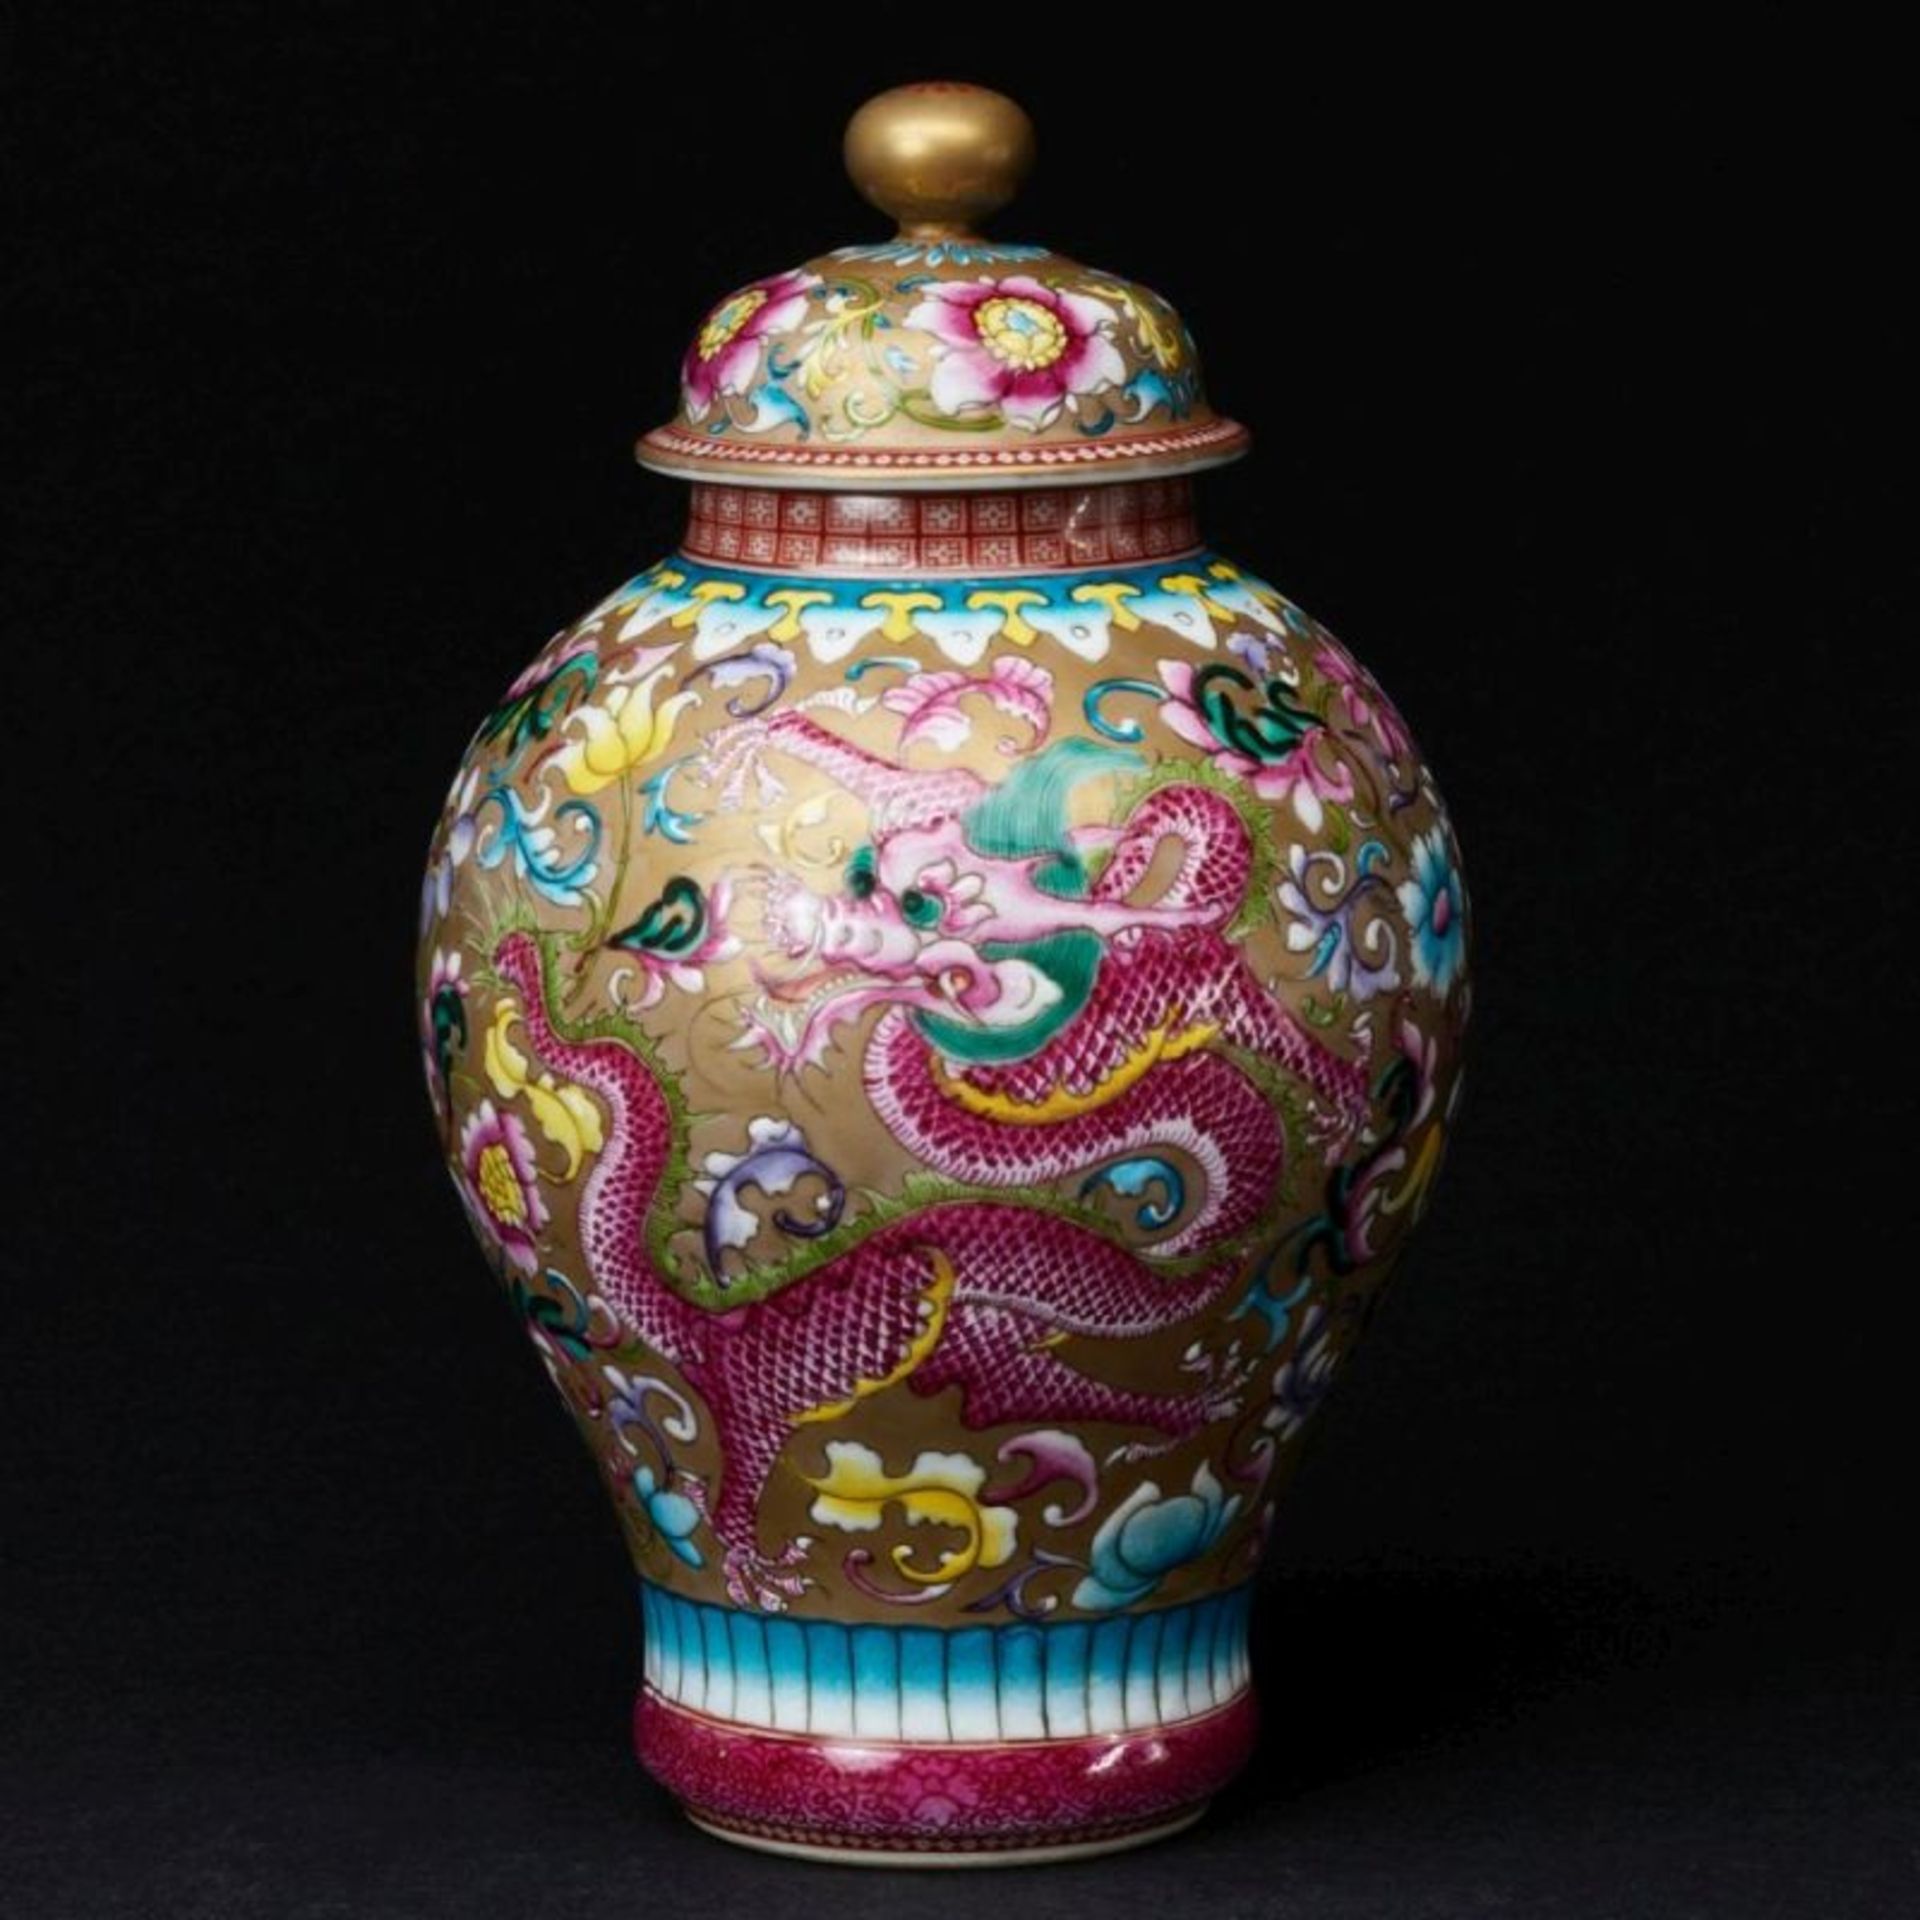 Deckelvase, China, Qing Dynastie, 19. Jahrhundert - Bild 2 aus 4